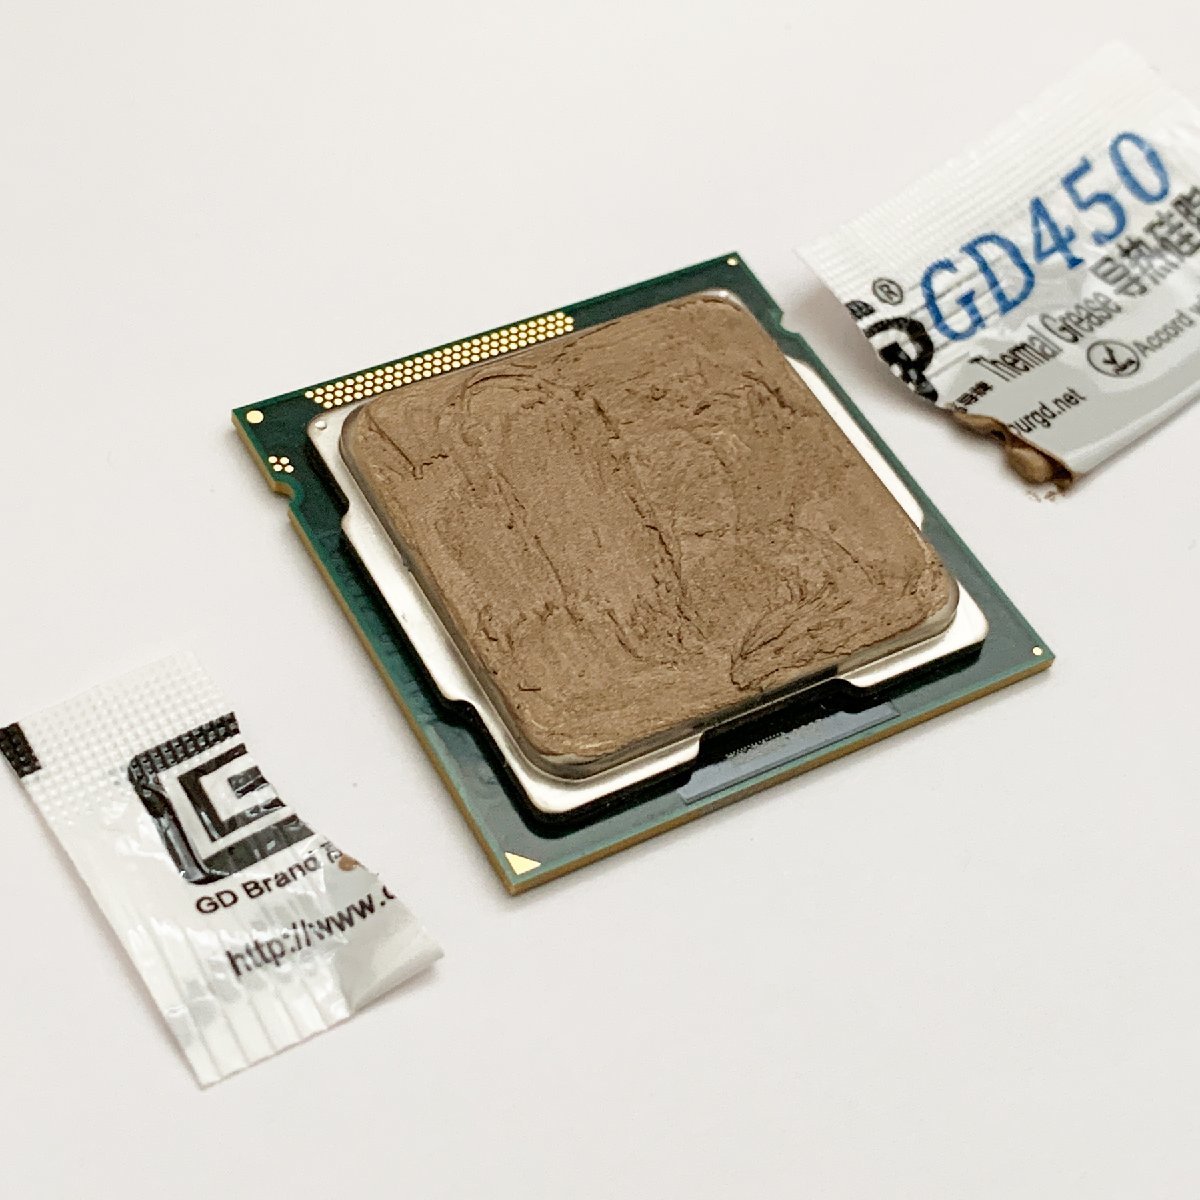 CPU смазка GD450 высокая эффективность силикон теплоотвод используя порез . модель изоляция . модель x 30 выпуск 